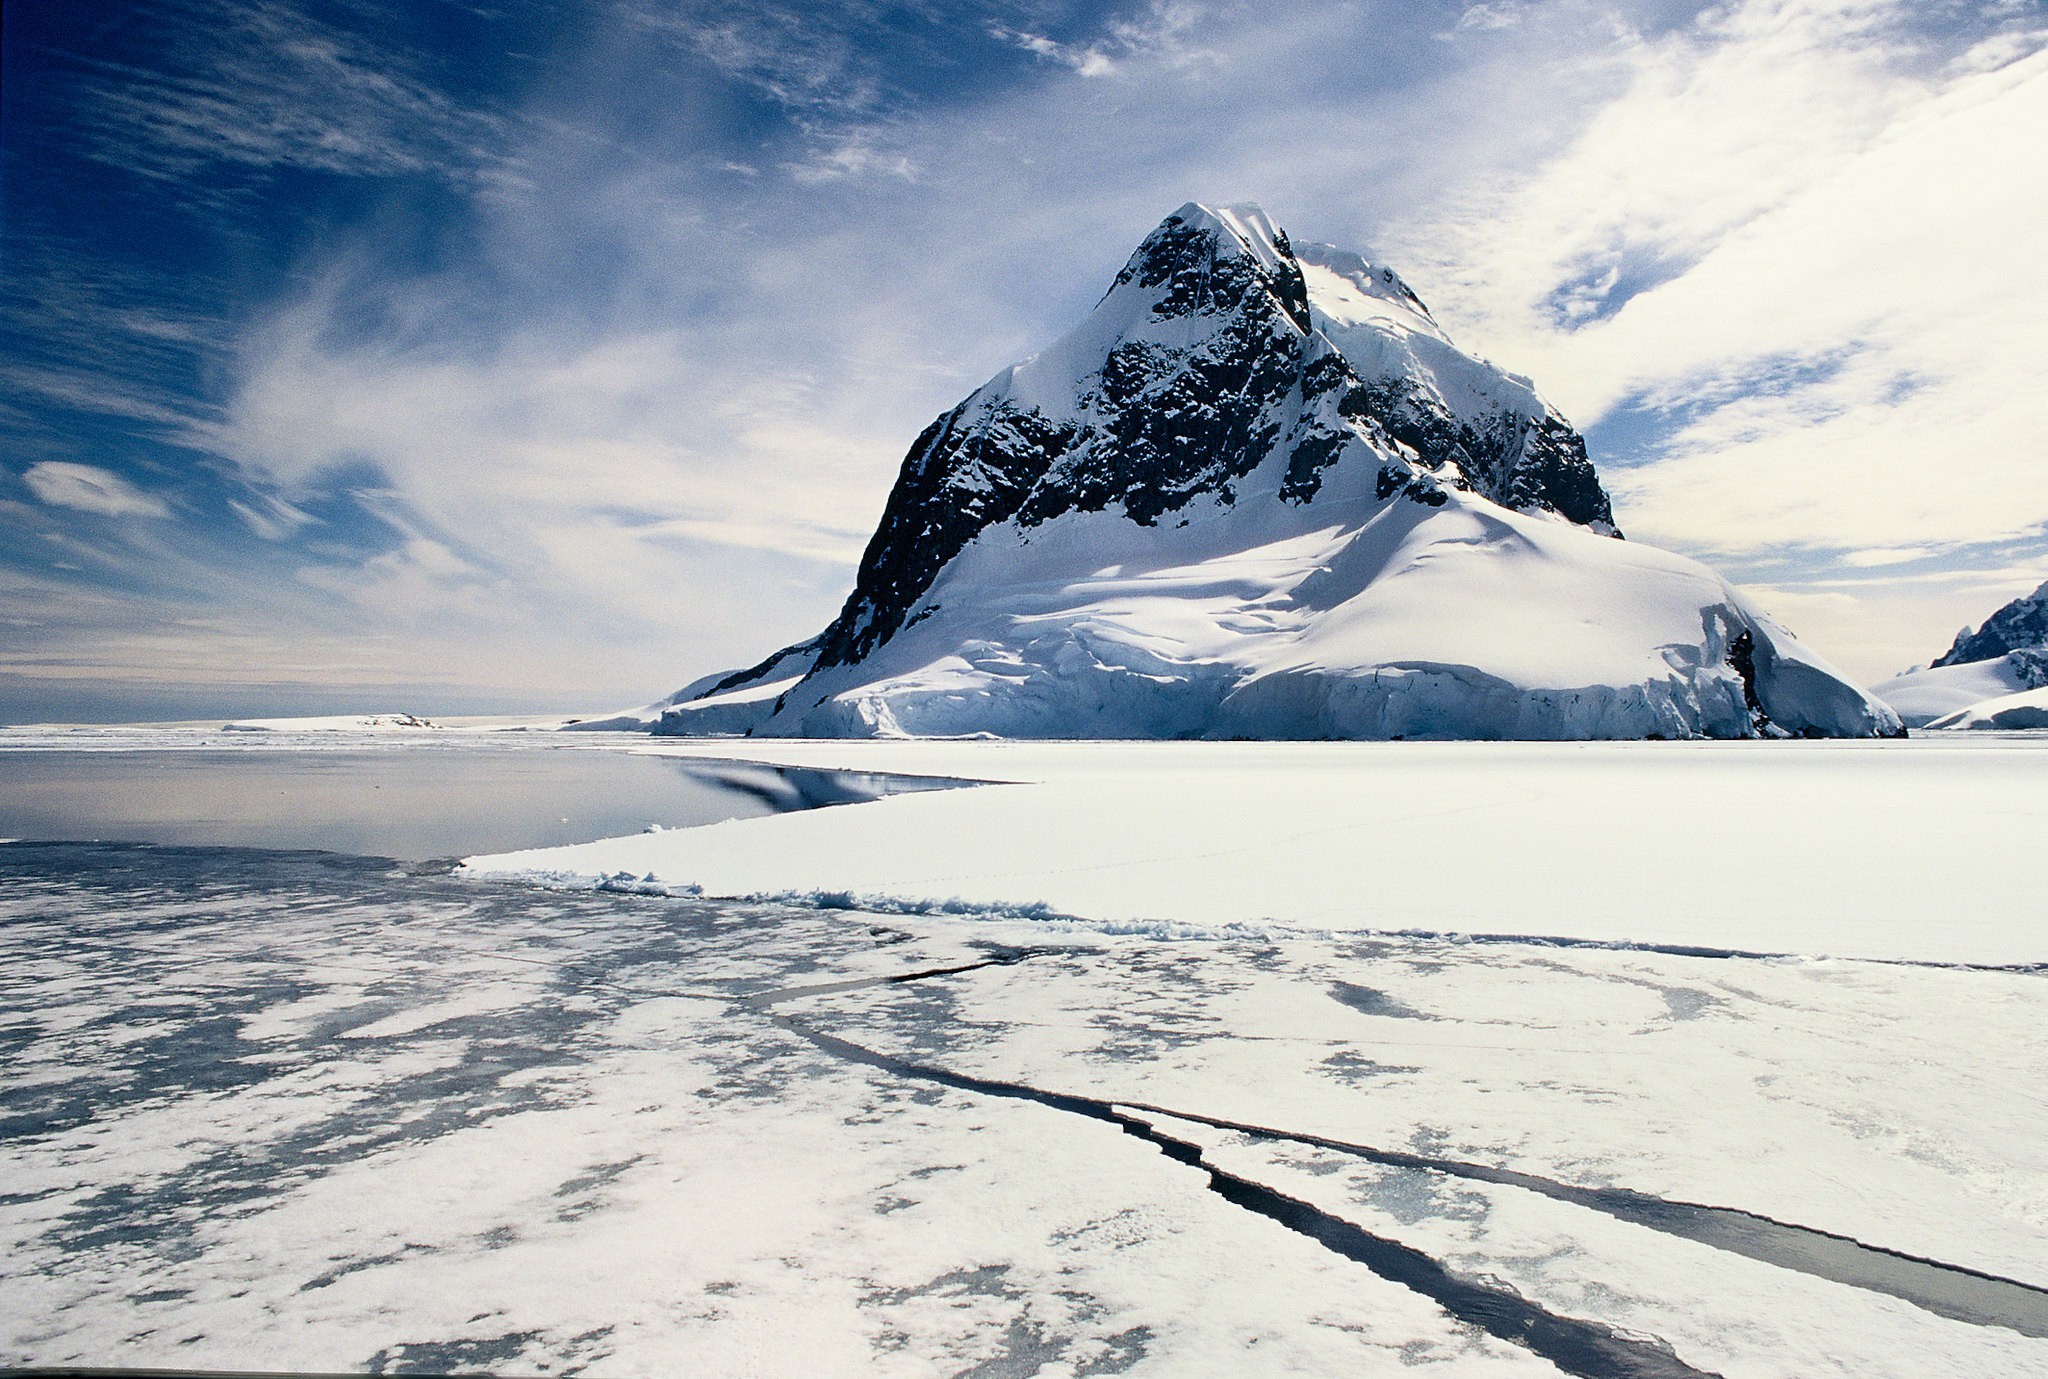 Uma das regiões de aquecimento mais rápido do mundo, a Península Antárctica está vivendo um derretimento acelerado nas últimas décadas (Foto: GRID-Arendal/Creative Commons)